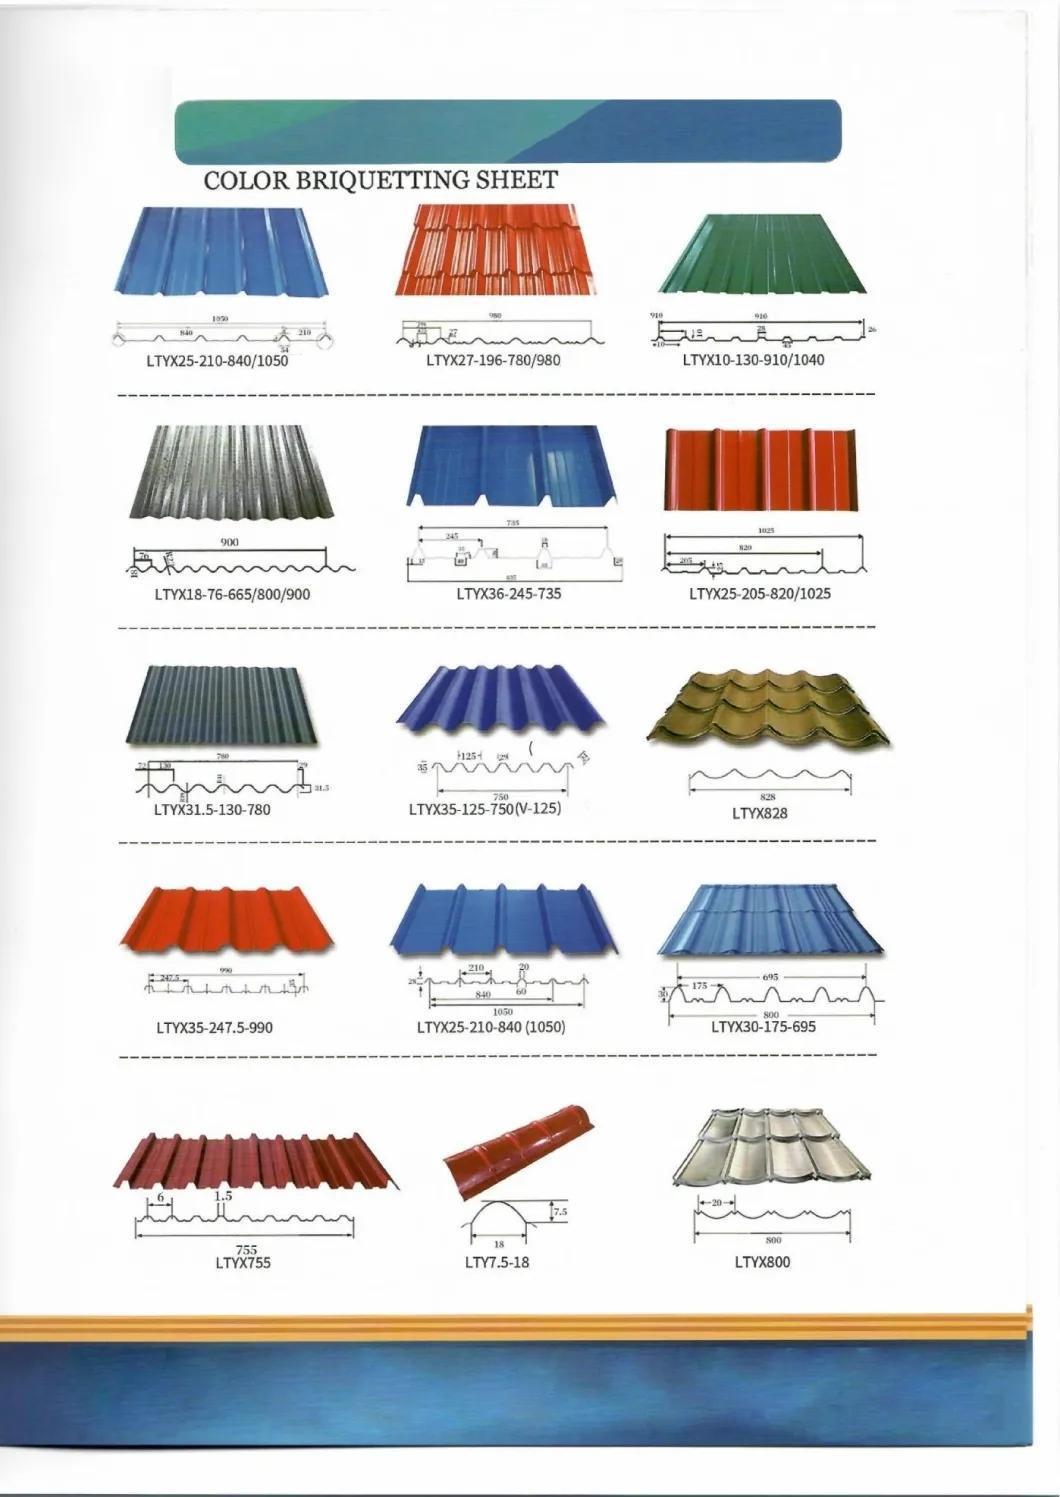 Galvanized Corrugated Steel Metal Roof Tile Metal Roofing Sheet Roofing Sheet From Haitu